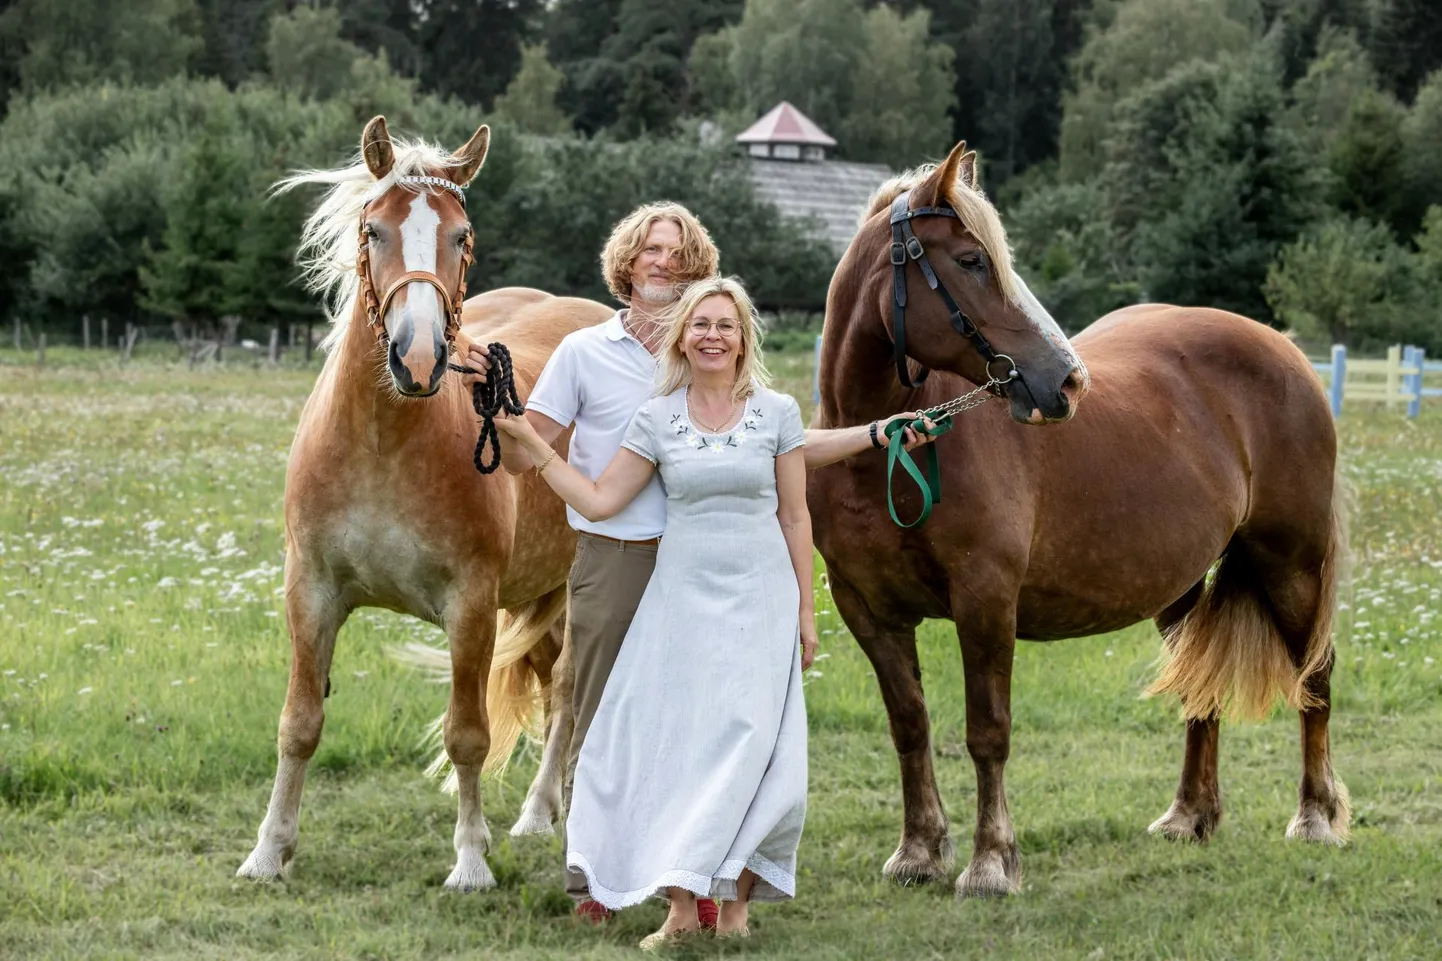 Maria talu peremees Enn Rand kasvatab eesti raskeveo­hobuseid ja abikaasa Riina Rand pani kahele neist nimed, nii esitlevadki nad oma Kullakallit ja Kallikallit.

 